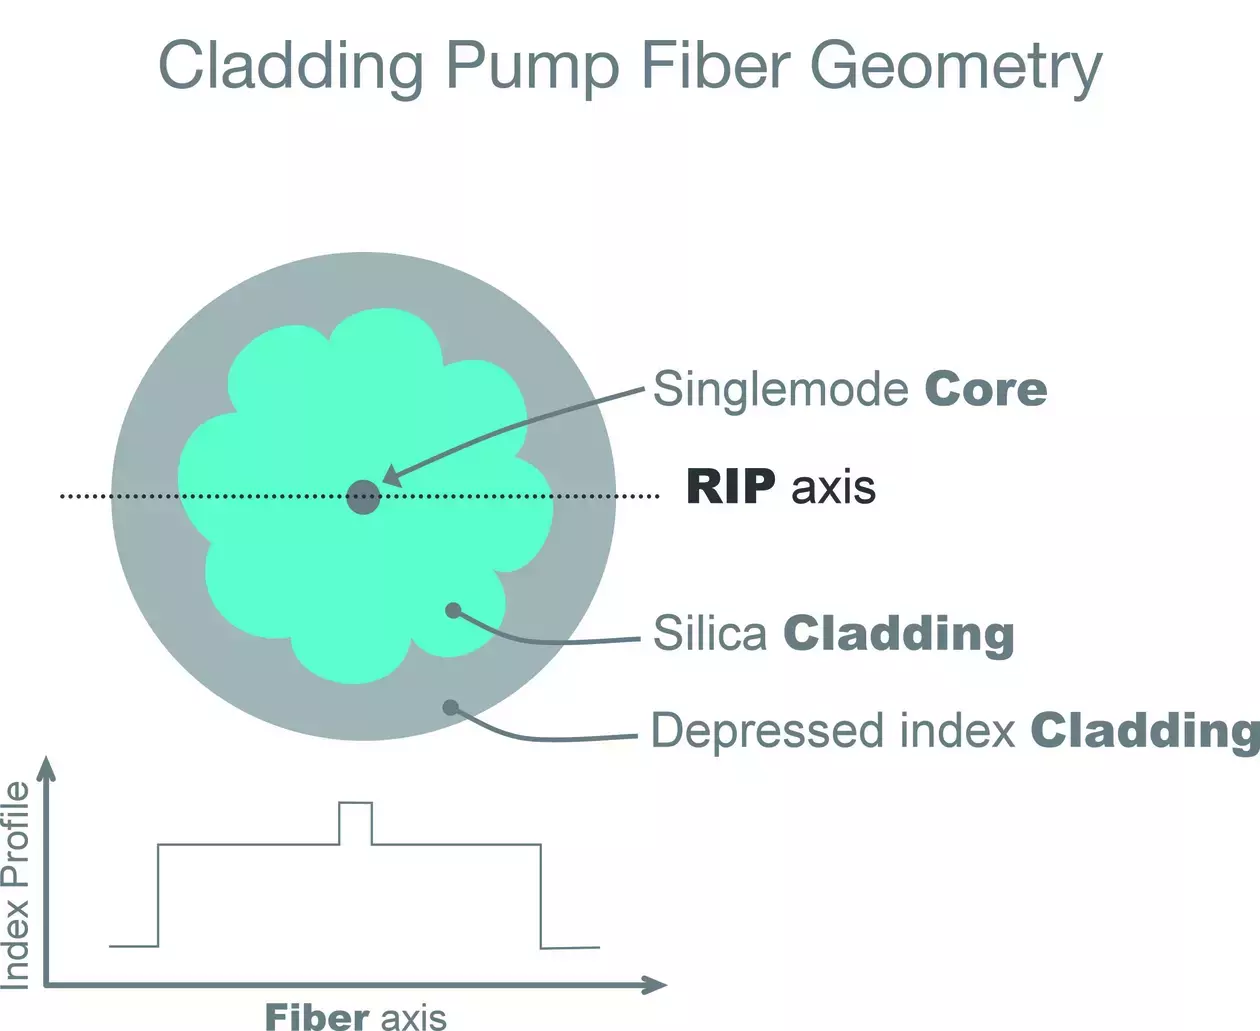 Cladding Pump Fiber